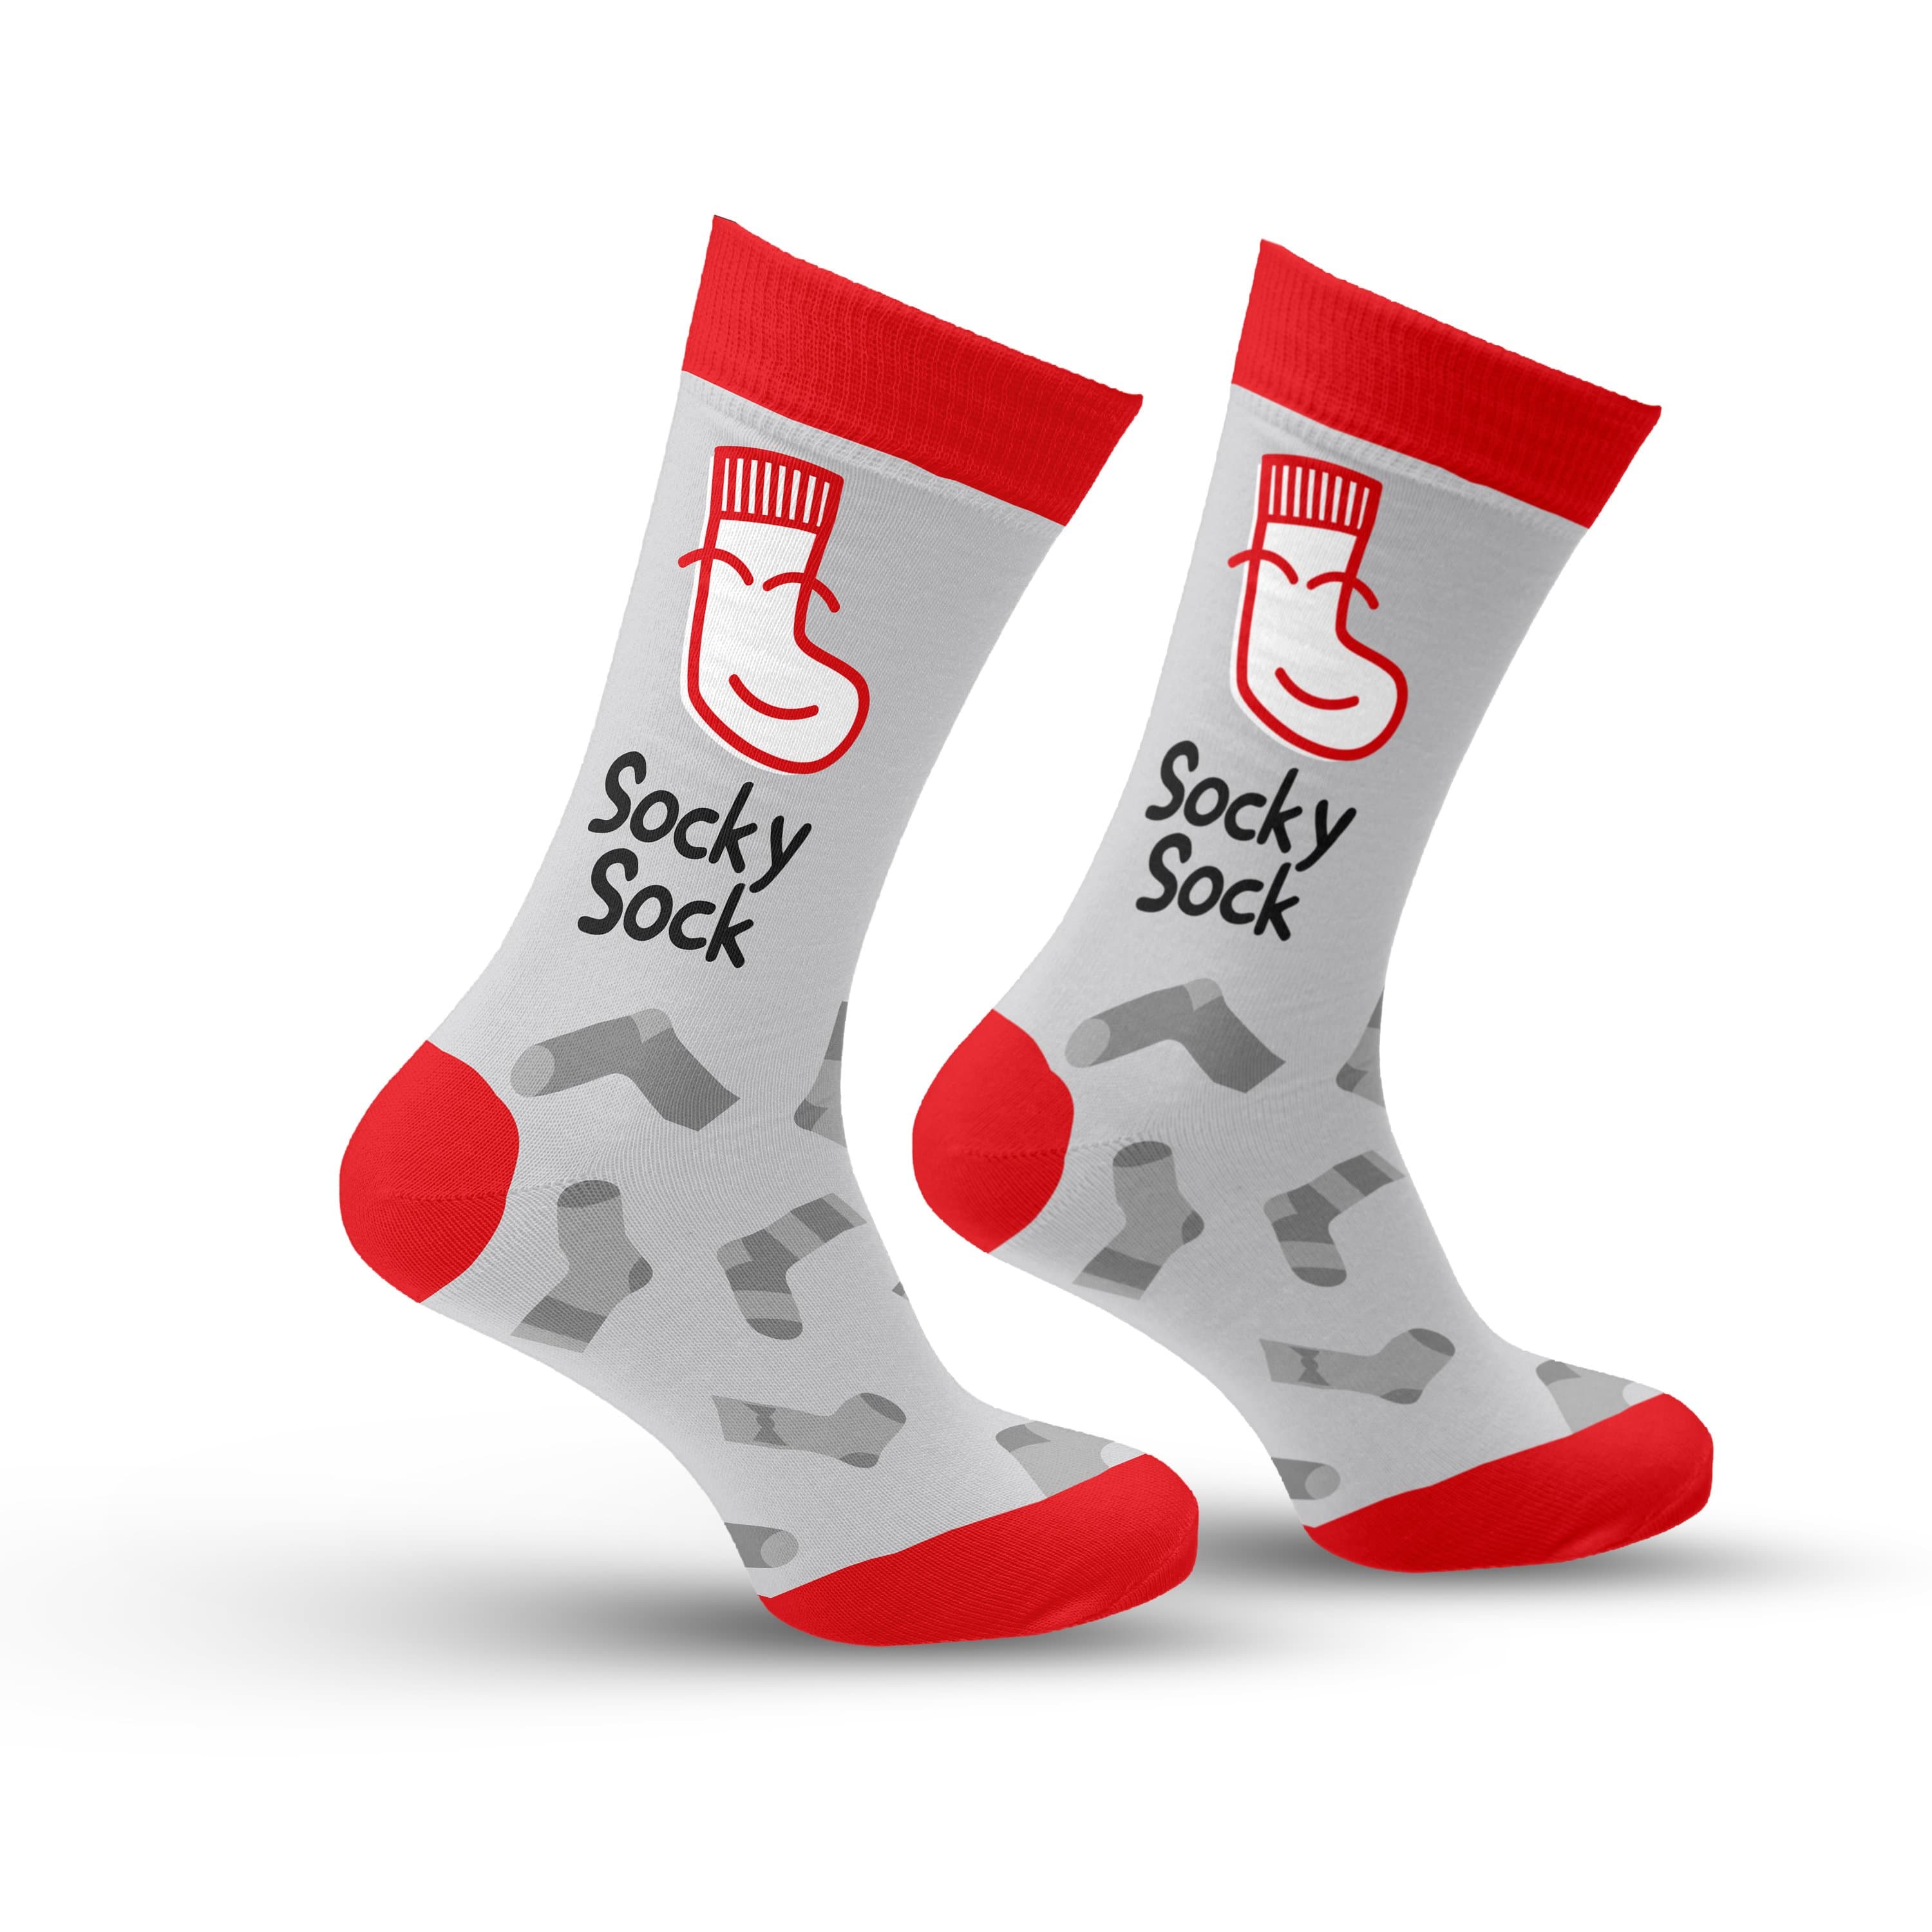 Socky Sock Socks